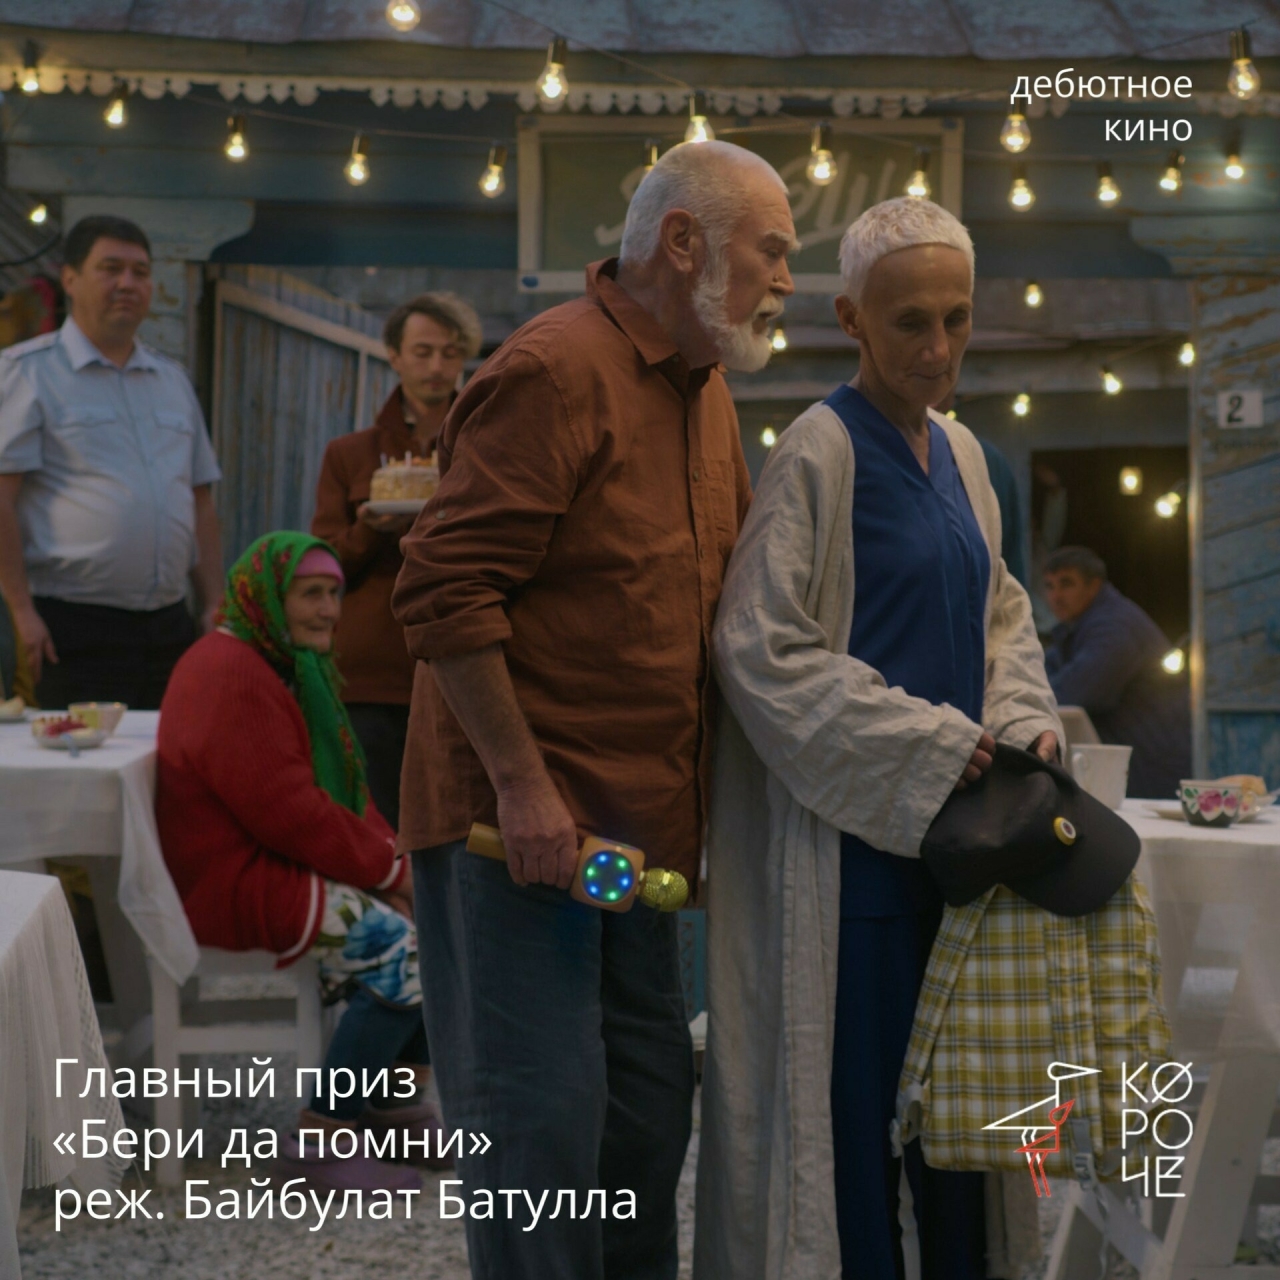 Фильм режиссера из Казани «Бери да помни» получил главный приз на фестивале «Короче»